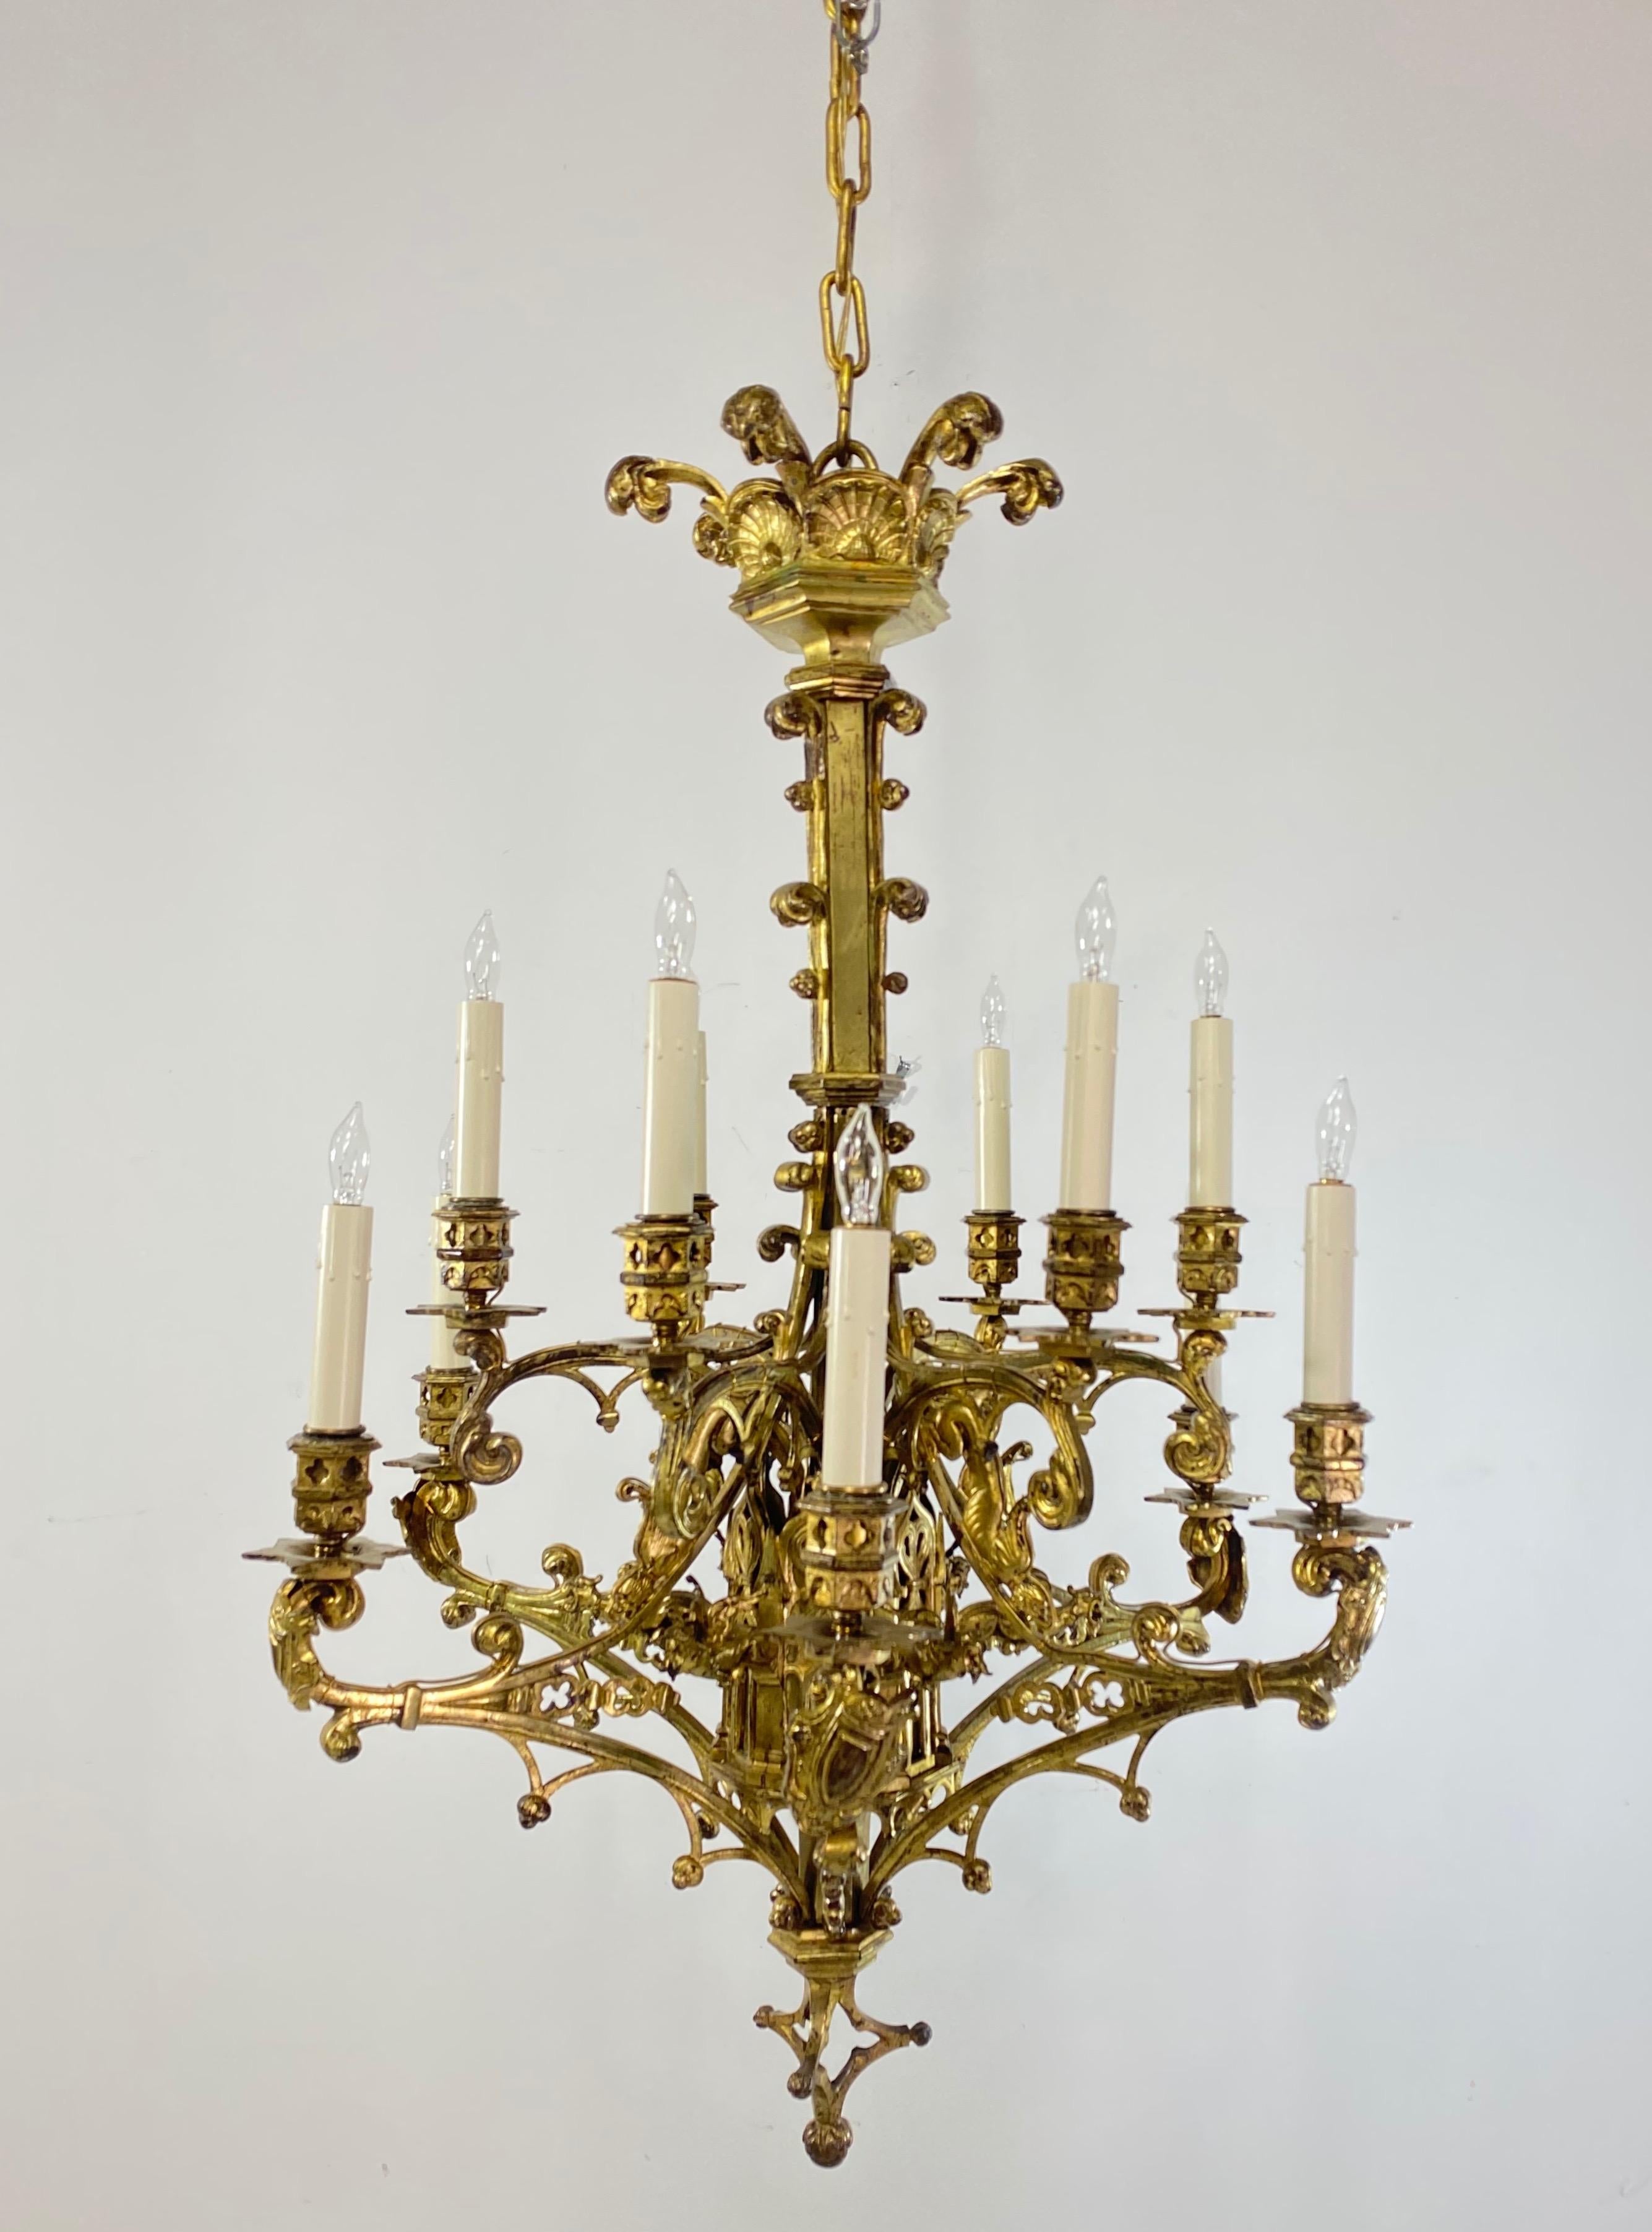 Exceptionnel luminaire d'époque néo-gothique en bronze doré massif à la manière d'Augustus Pugin. Moulage de très haute qualité avec de superbes détails. A l'origine, elle contenait des bougies, mais elle a été récemment rénovée et équipée d'un